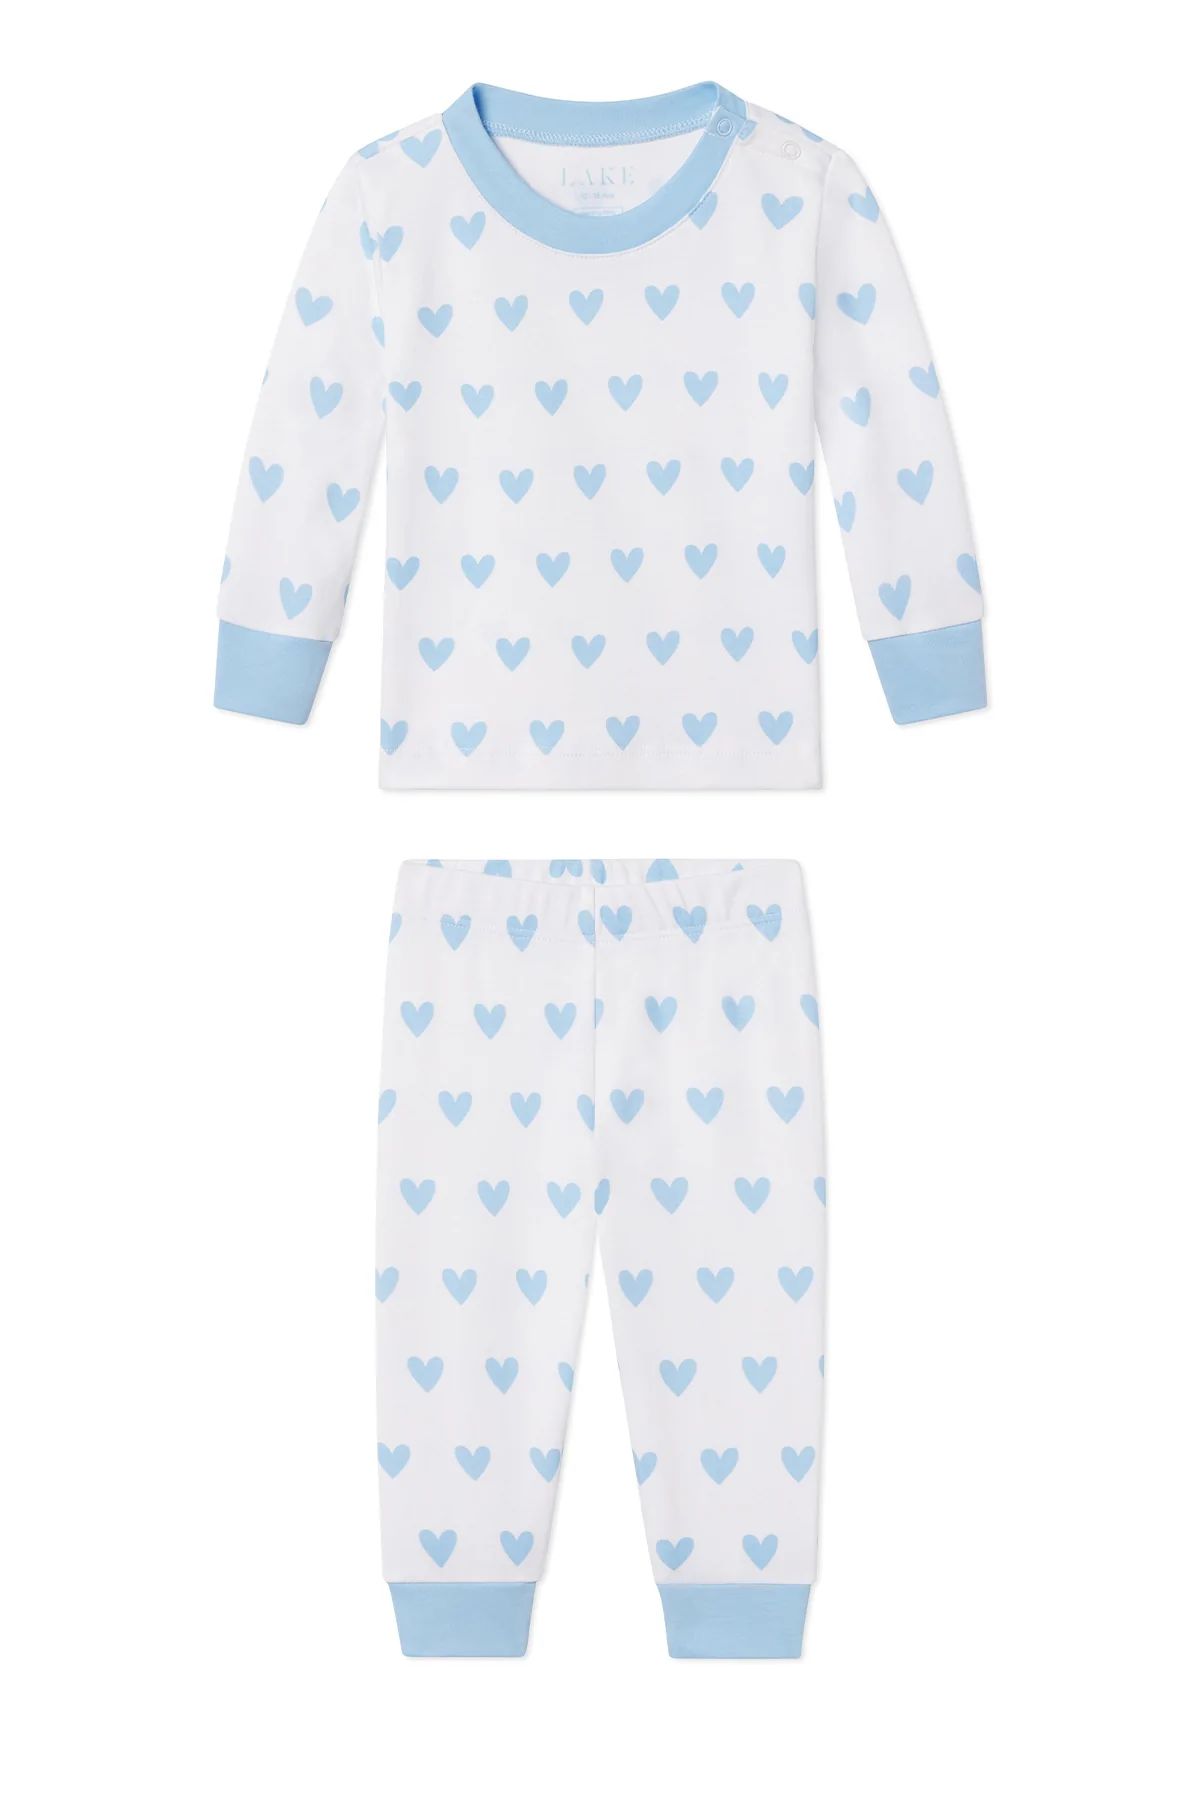 Baby Long-Long Set in Blue Heart | LAKE Pajamas